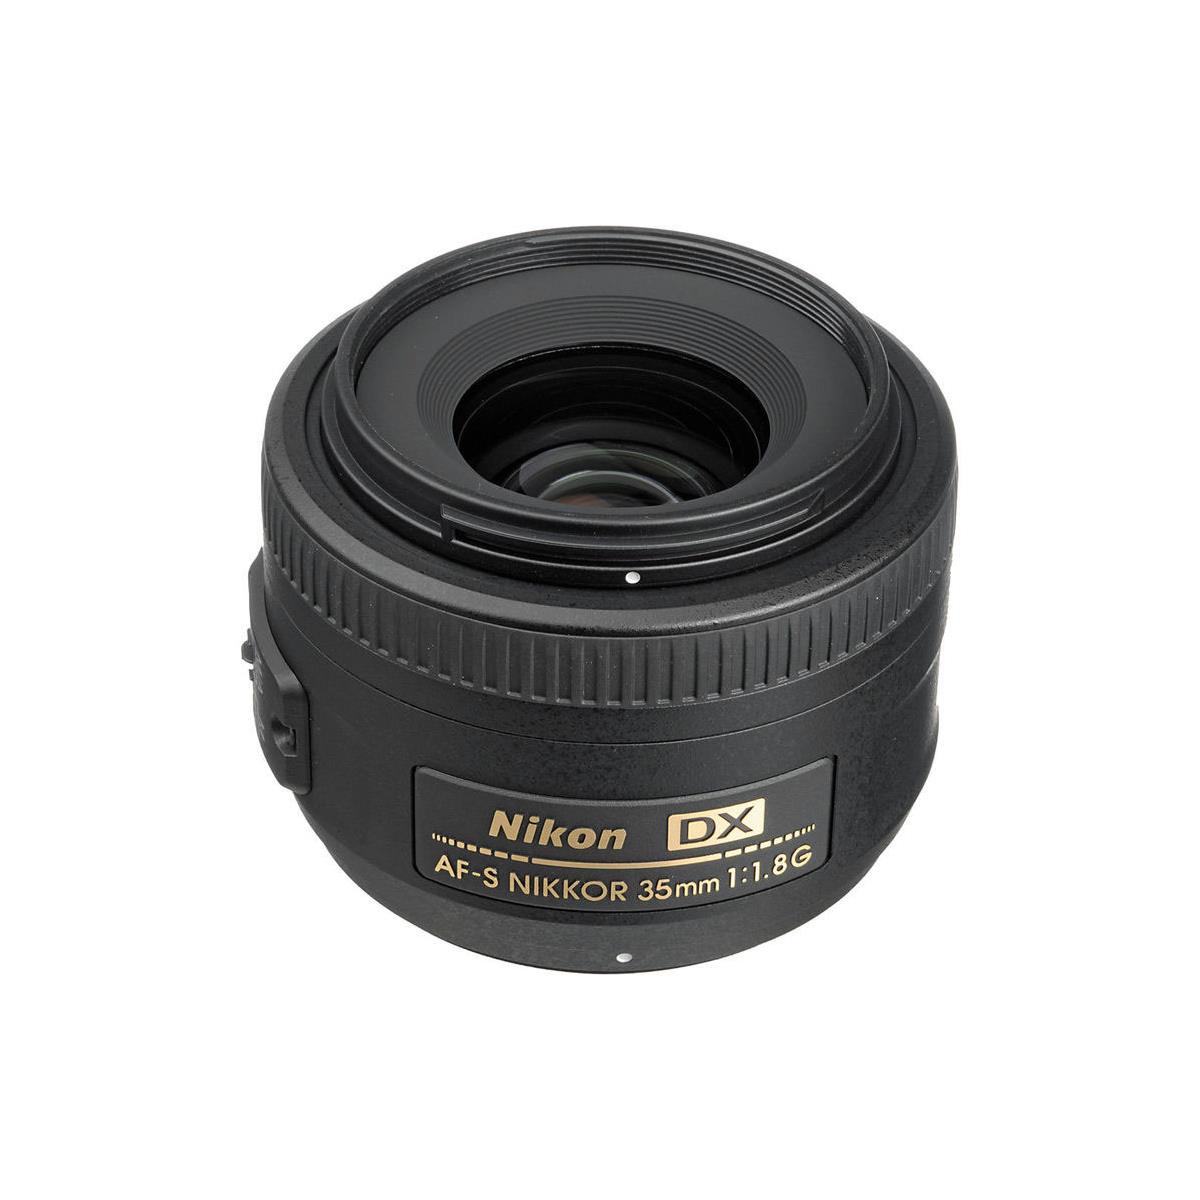 Image of Nikon 35mm f/1.8G AF-S DX NIKKOR Lens for DSLR Cameras